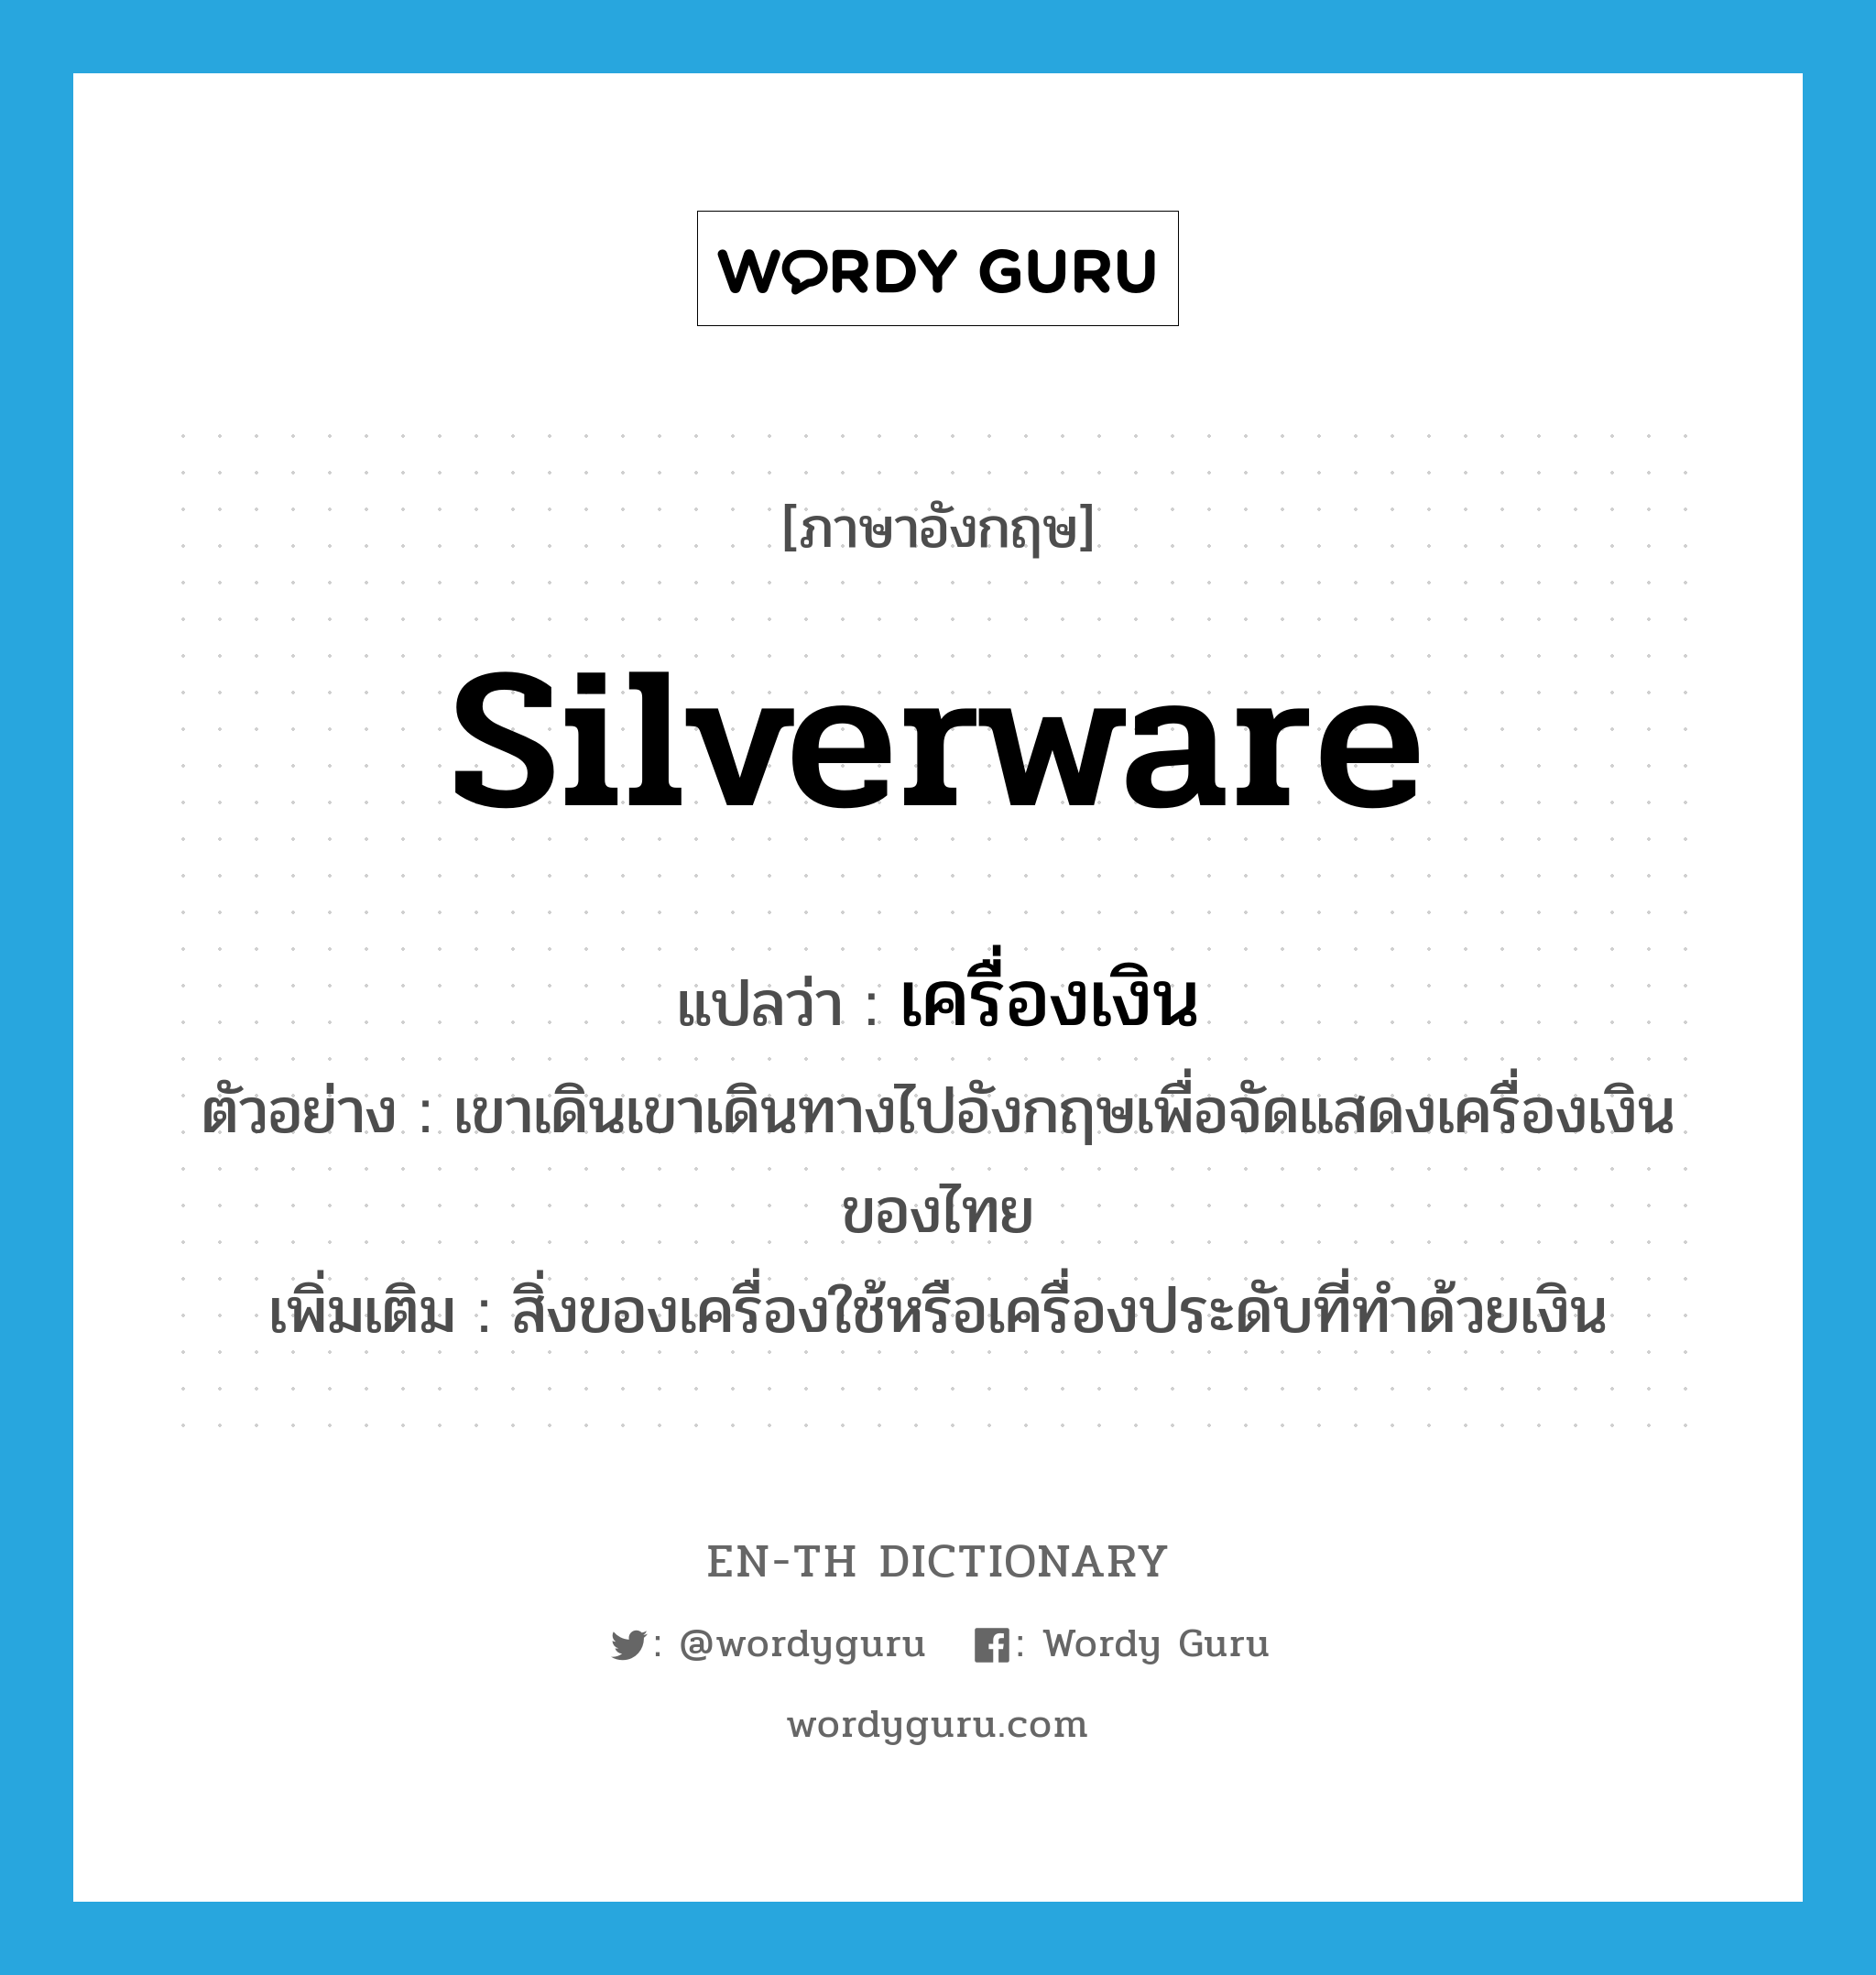 silverware แปลว่า?, คำศัพท์ภาษาอังกฤษ silverware แปลว่า เครื่องเงิน ประเภท N ตัวอย่าง เขาเดินเขาเดินทางไปอังกฤษเพื่อจัดแสดงเครื่องเงินของไทย เพิ่มเติม สิ่งของเครื่องใช้หรือเครื่องประดับที่ทำด้วยเงิน หมวด N